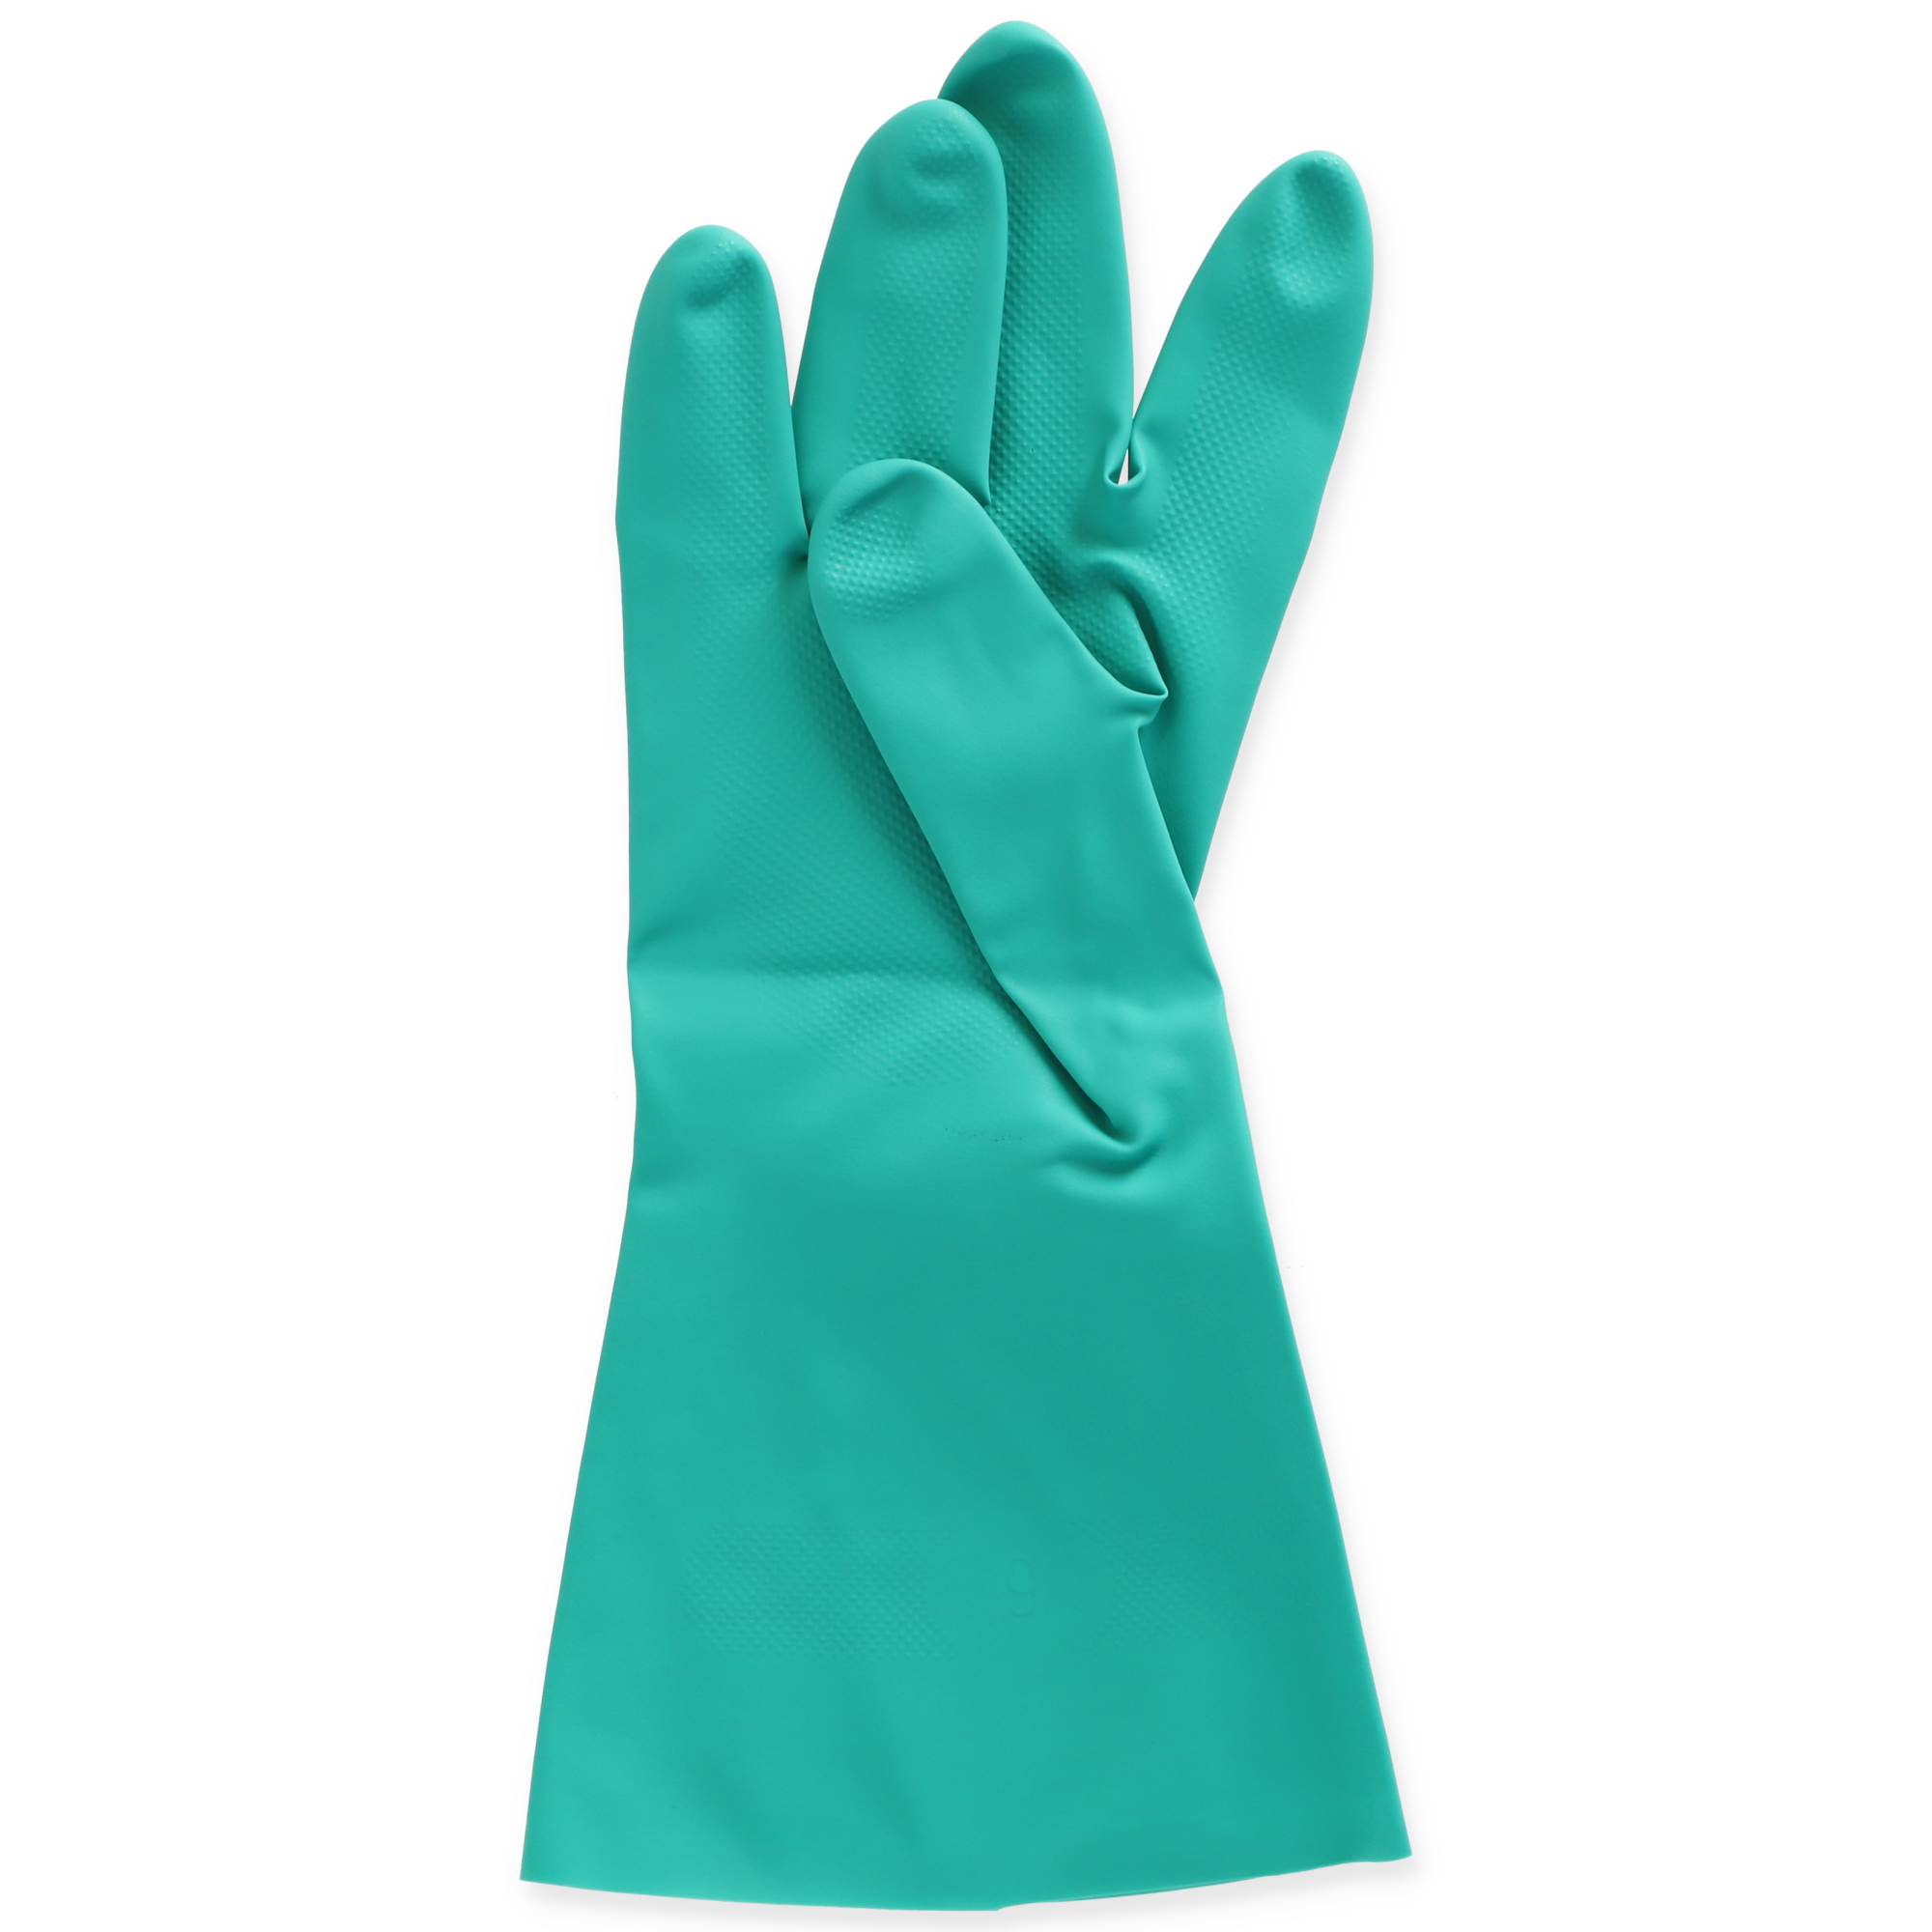 Handschuhe 'Green Tech' grün Gr. L + product picture